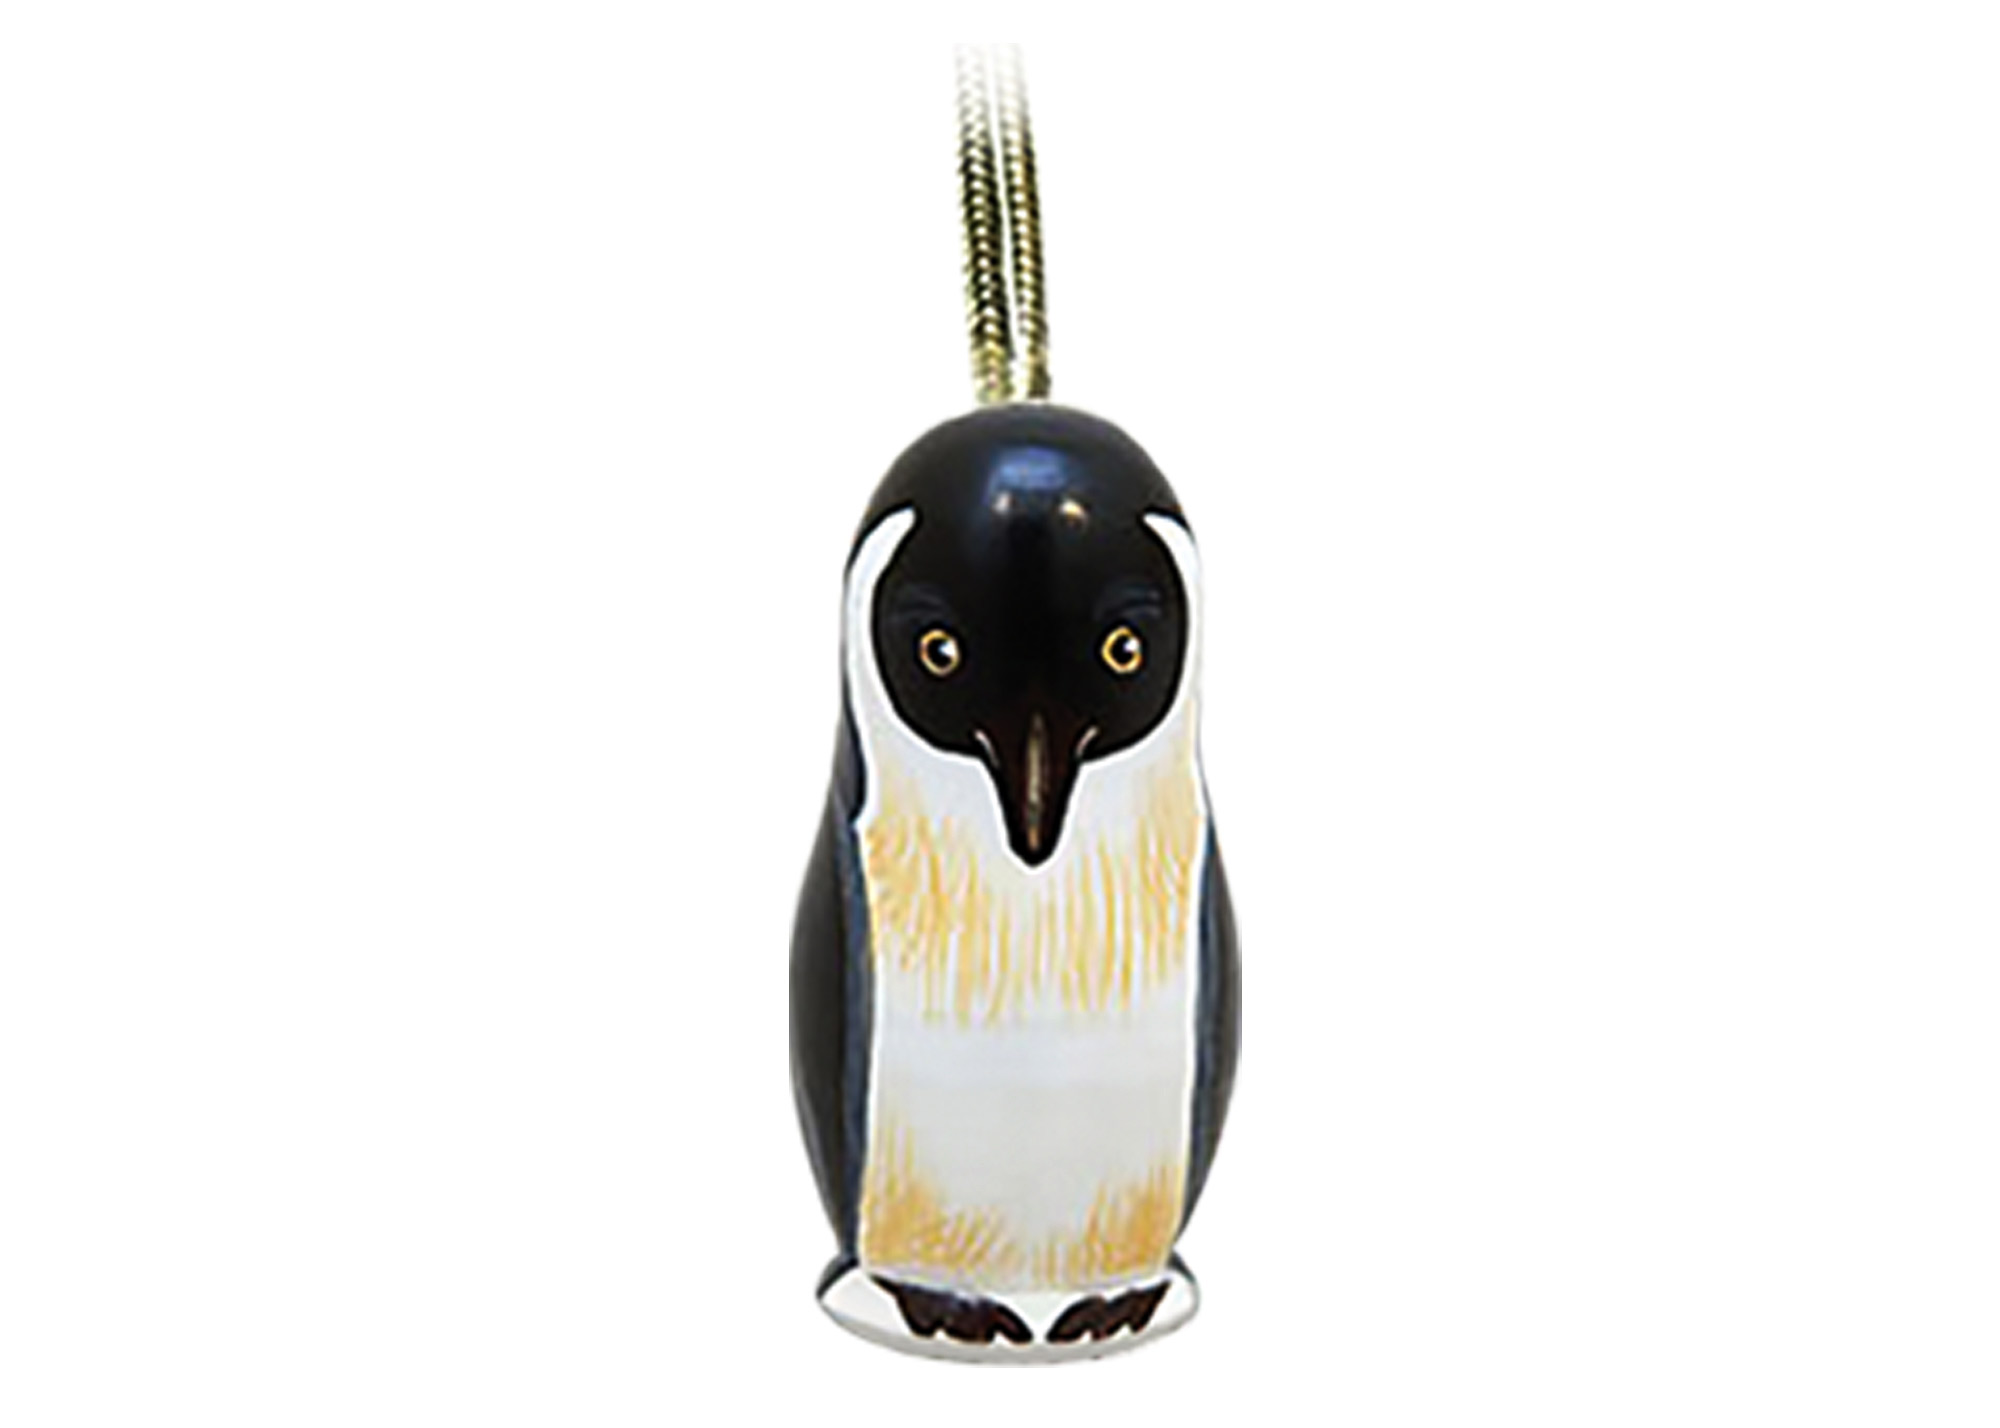 Buy Penguin Mini Realistic Ornament 1.75" at GoldenCockerel.com